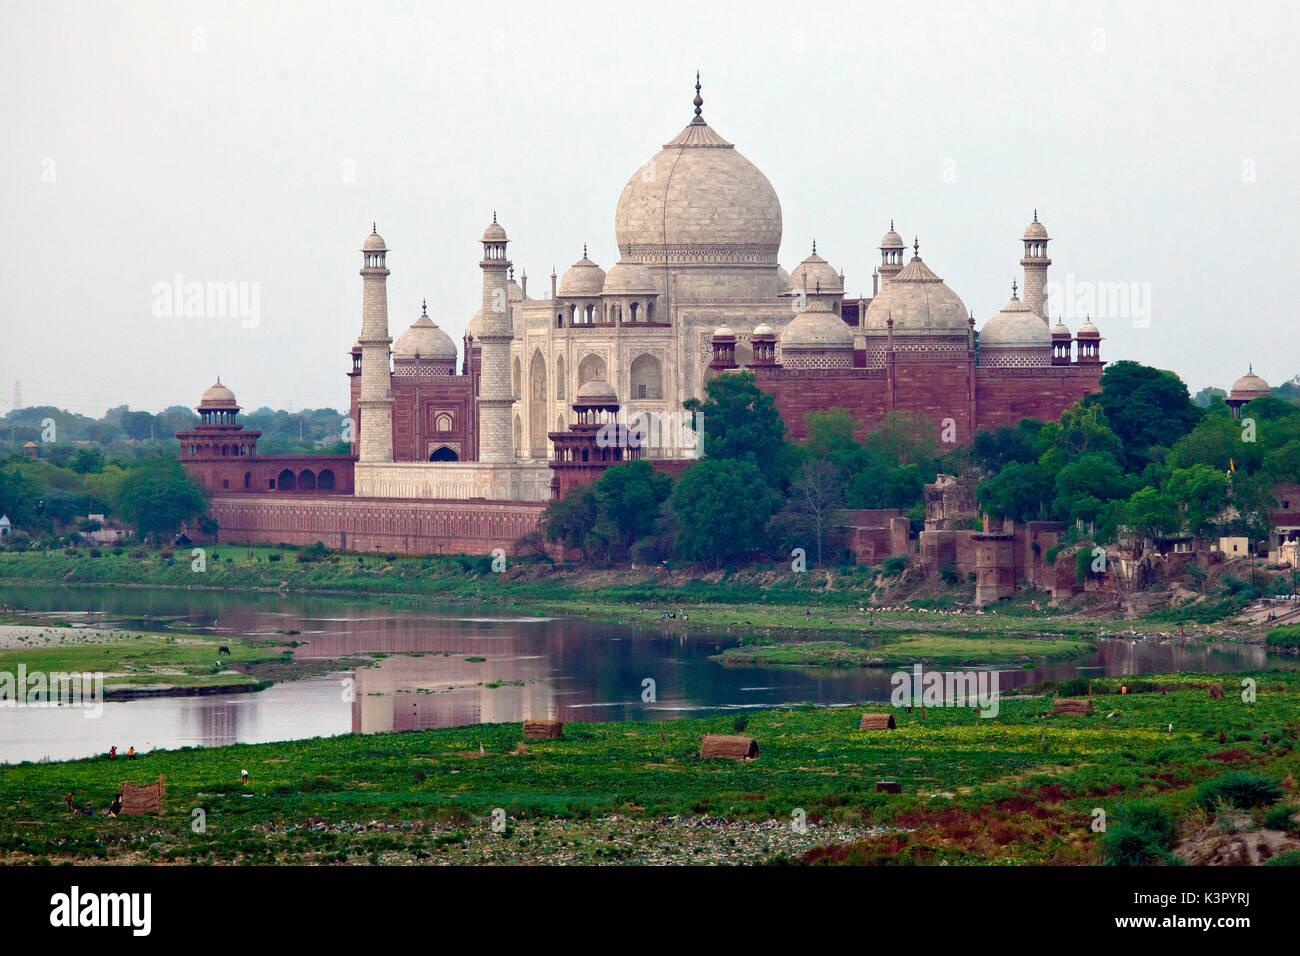 Le Taj Mahal, joyau de l'art musulman en Inde et l'un des chefs-d'œuvre universellement admirés du patrimoine dans le monde, et la rivière Yamuna Agra, Inde Banque D'Images